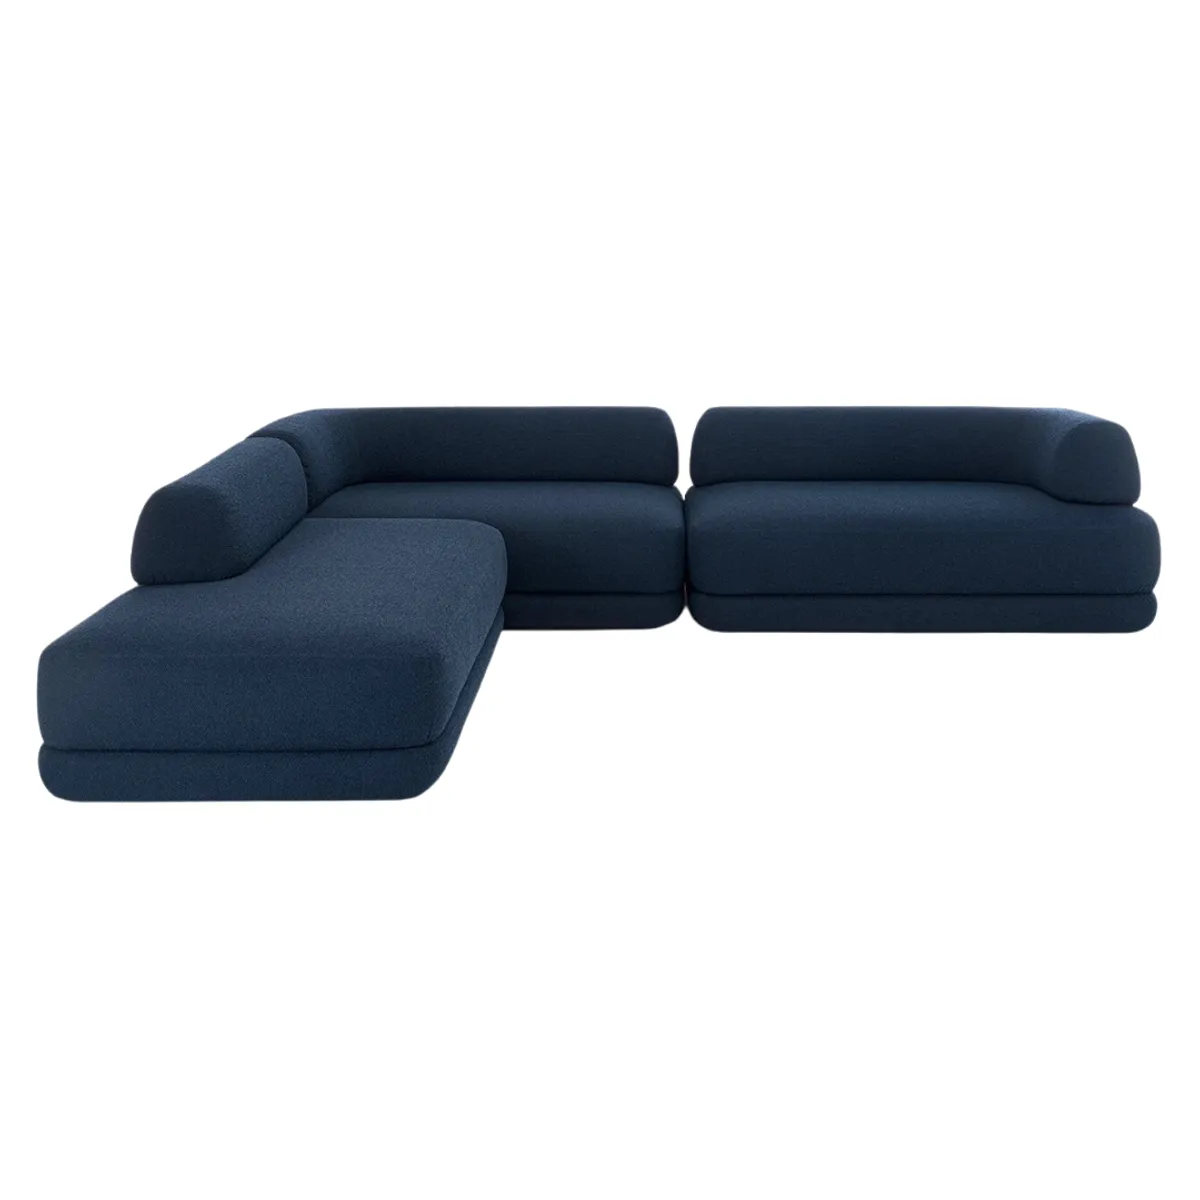 Putellas sofa 3